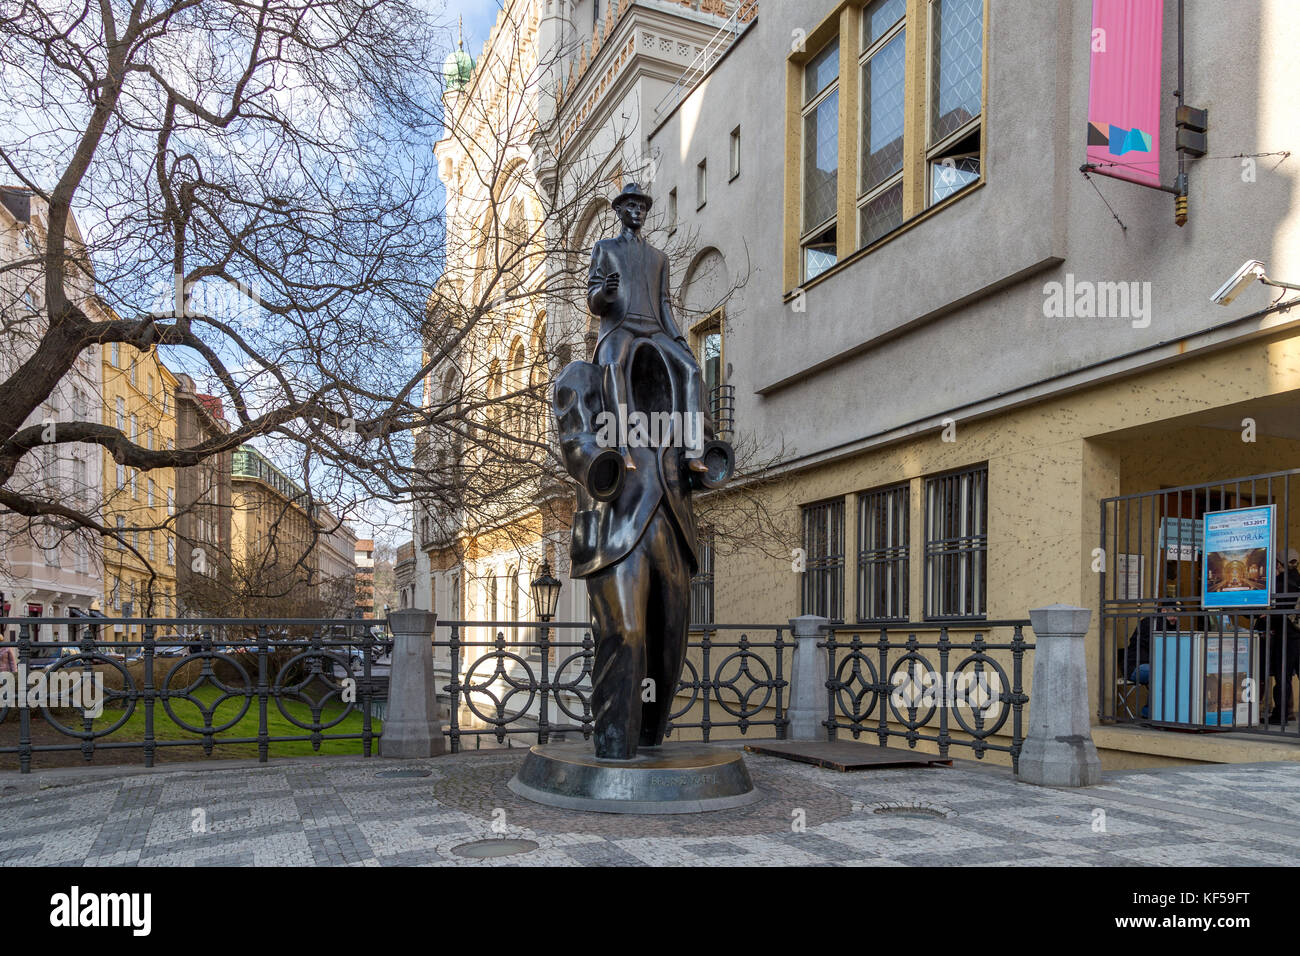 Praga, República Checa - Marzo 15, 2017: Franz Kafka estatua en el barrio judío por artista jaroslav rona. Foto de stock